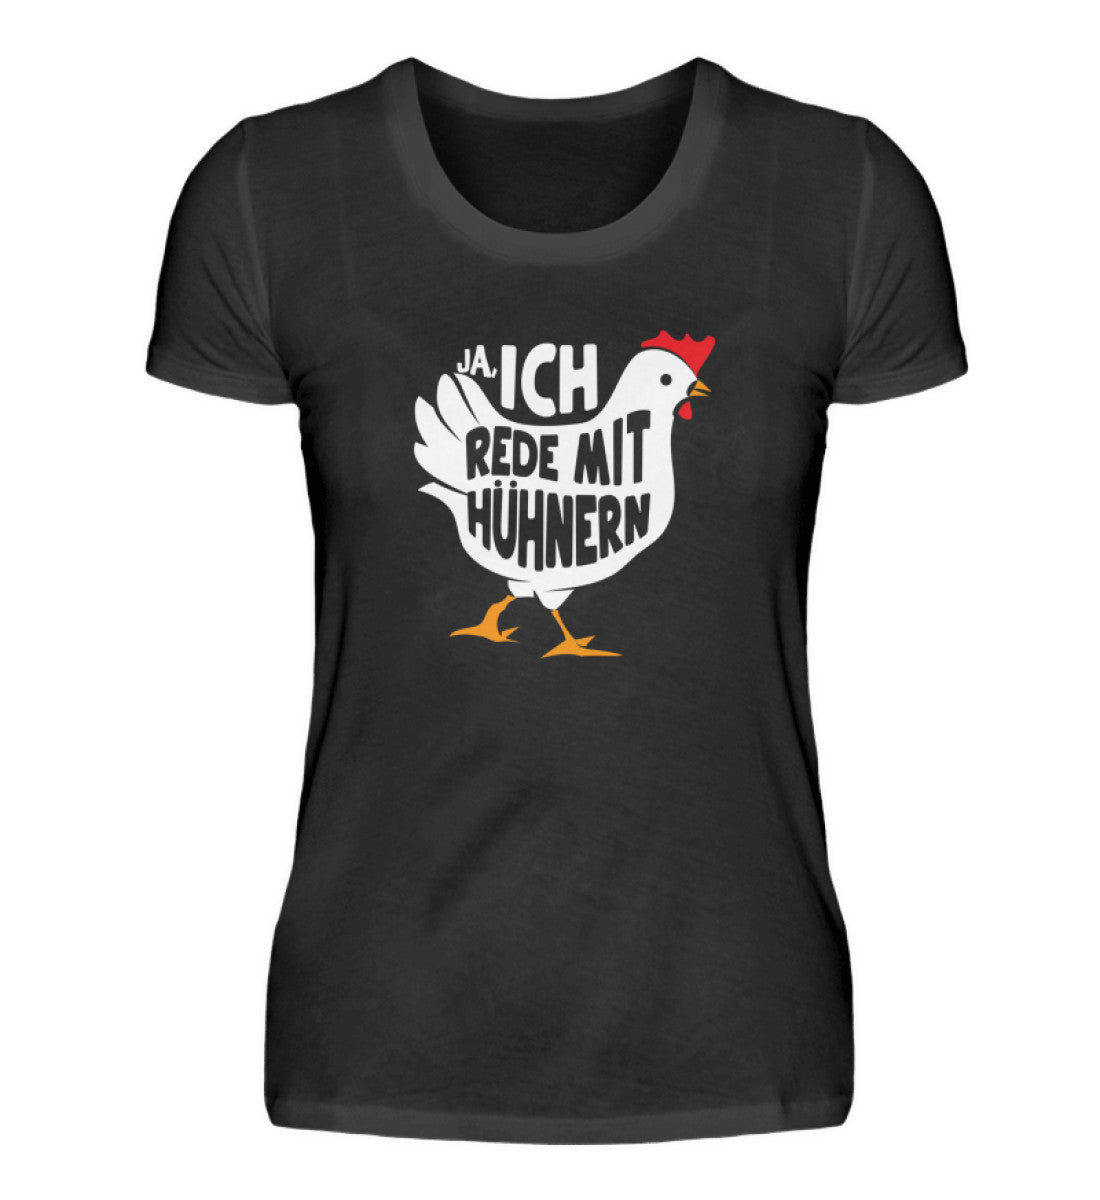 Ja, ich rede mit Hühnern · Damen T-Shirt-Damen Basic T-Shirt-Black-S-Agrarstarz